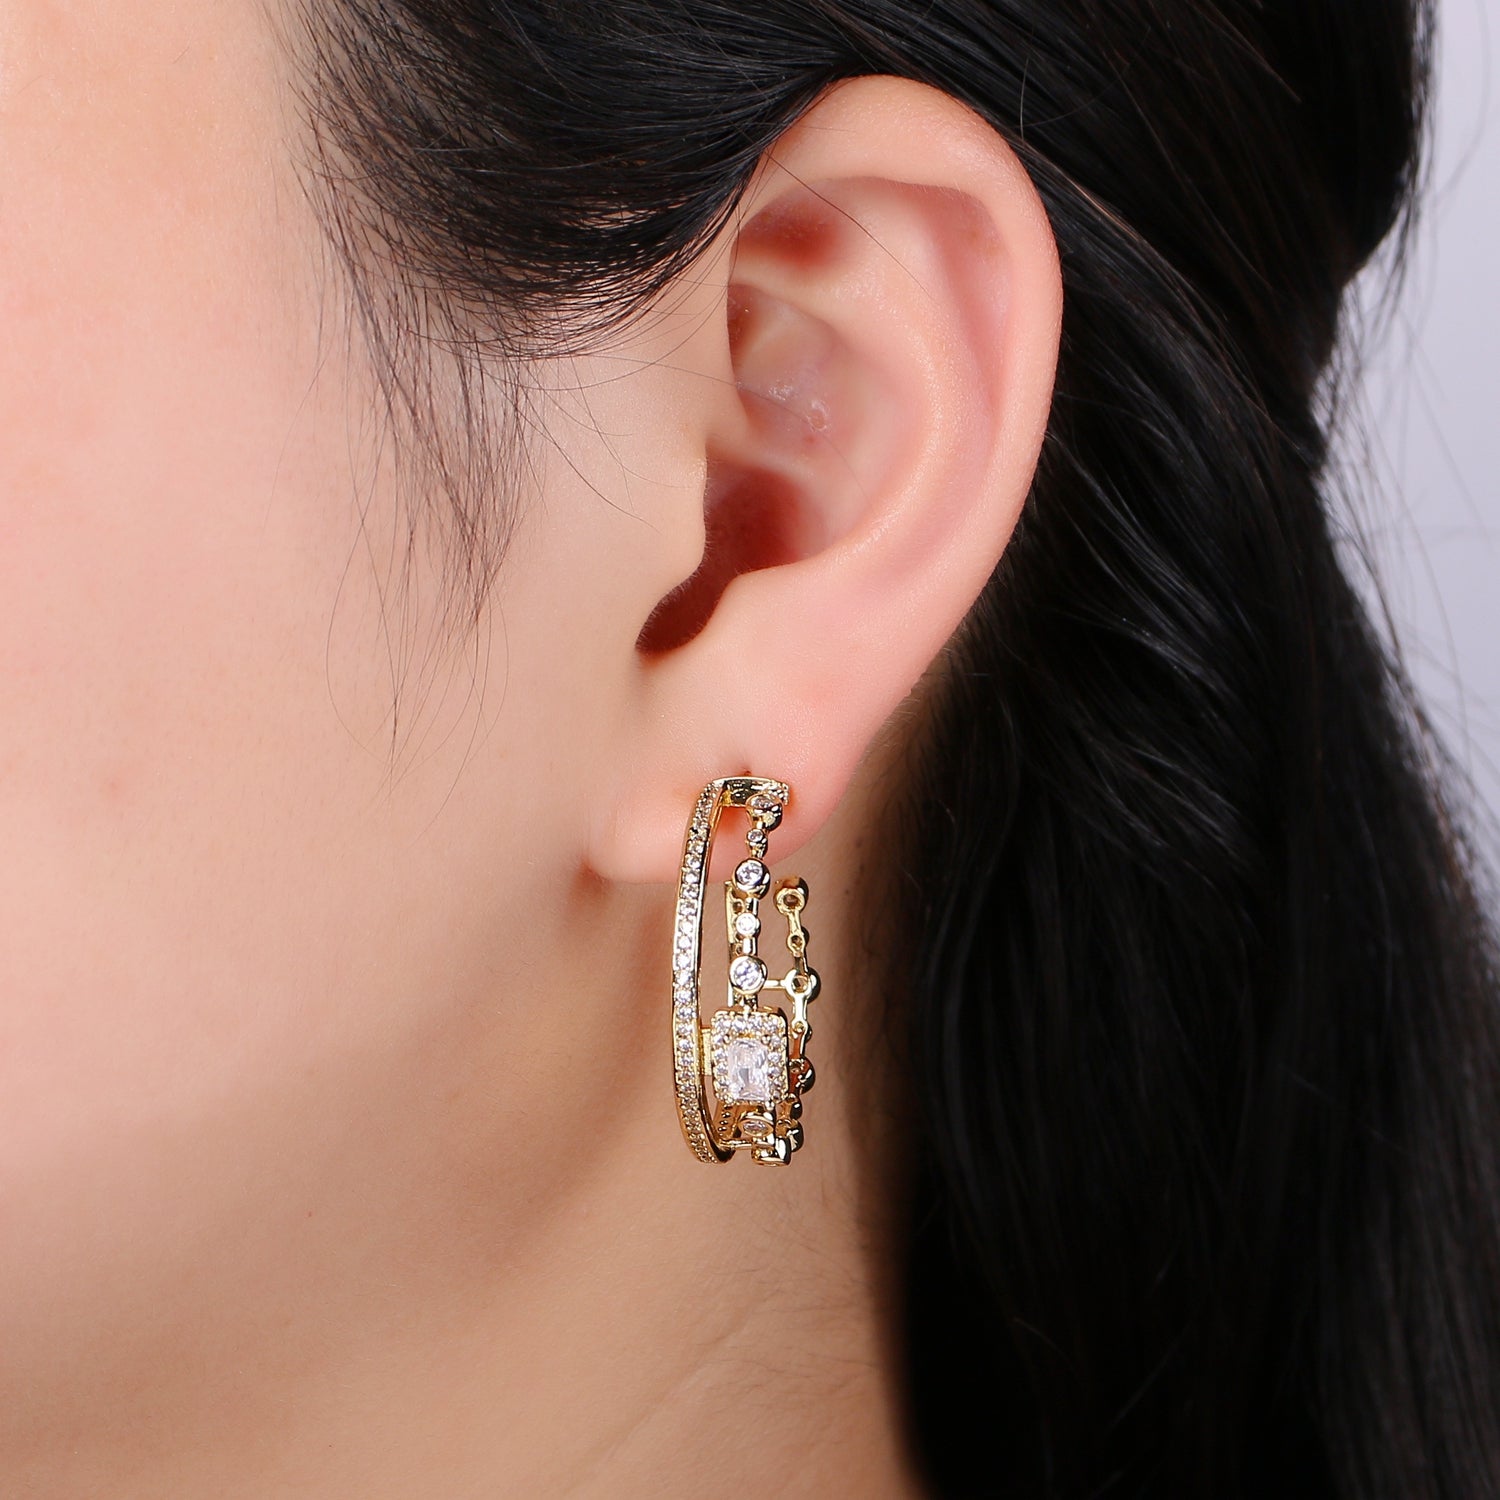 24K Gold Hoop Earring - Mismatched Hoop Earring - Geometric Cz hoop earring for women - Large Hoop 30MM Earring gift idea - DLUXCA